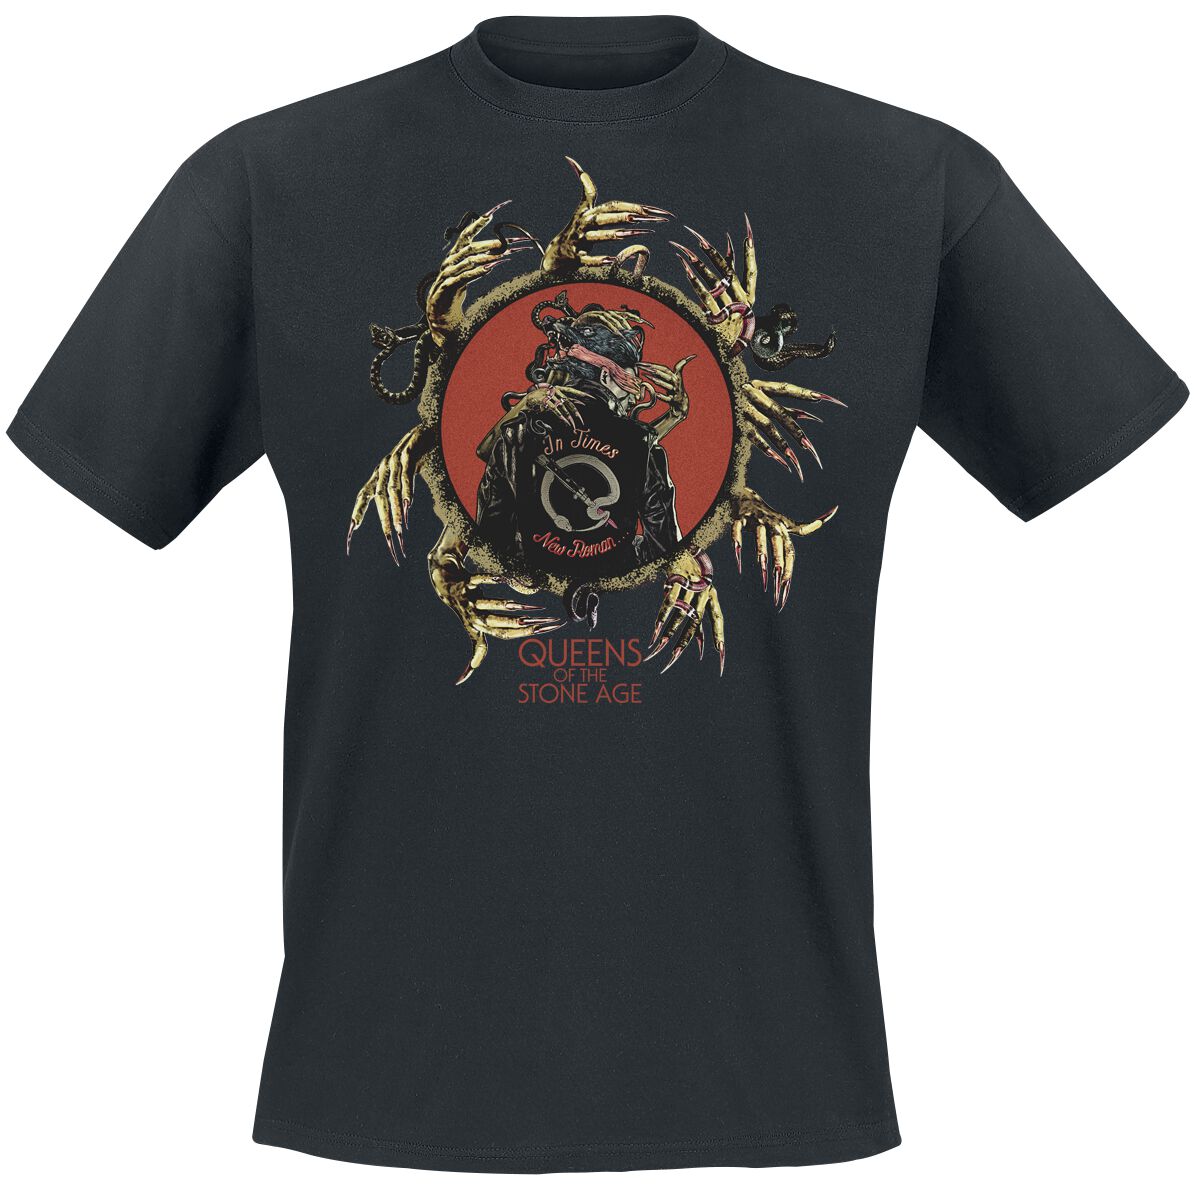 Queens Of The Stone Age T-Shirt - In Times New Roman - Circle Hands - S bis 3XL - für Männer - Größe M - schwarz  - Lizenziertes Merchandise!